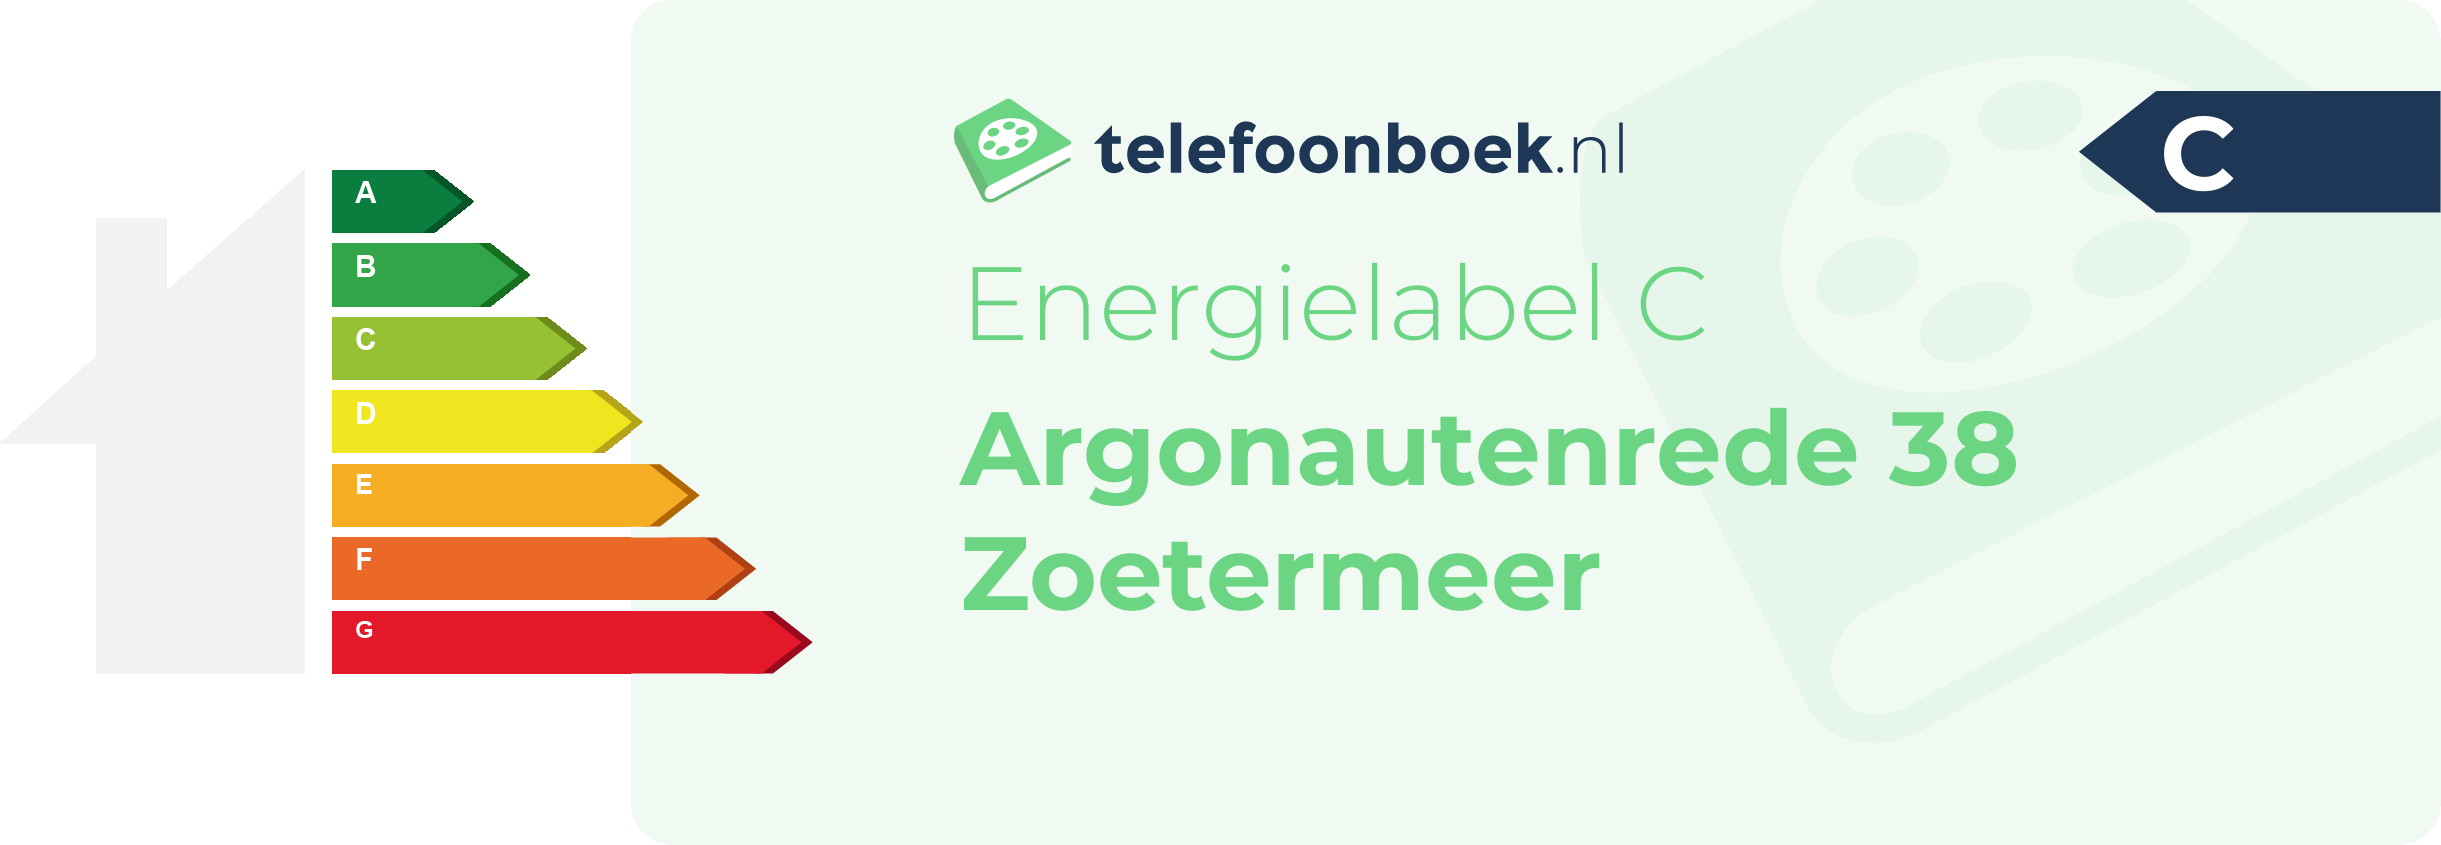 Energielabel Argonautenrede 38 Zoetermeer